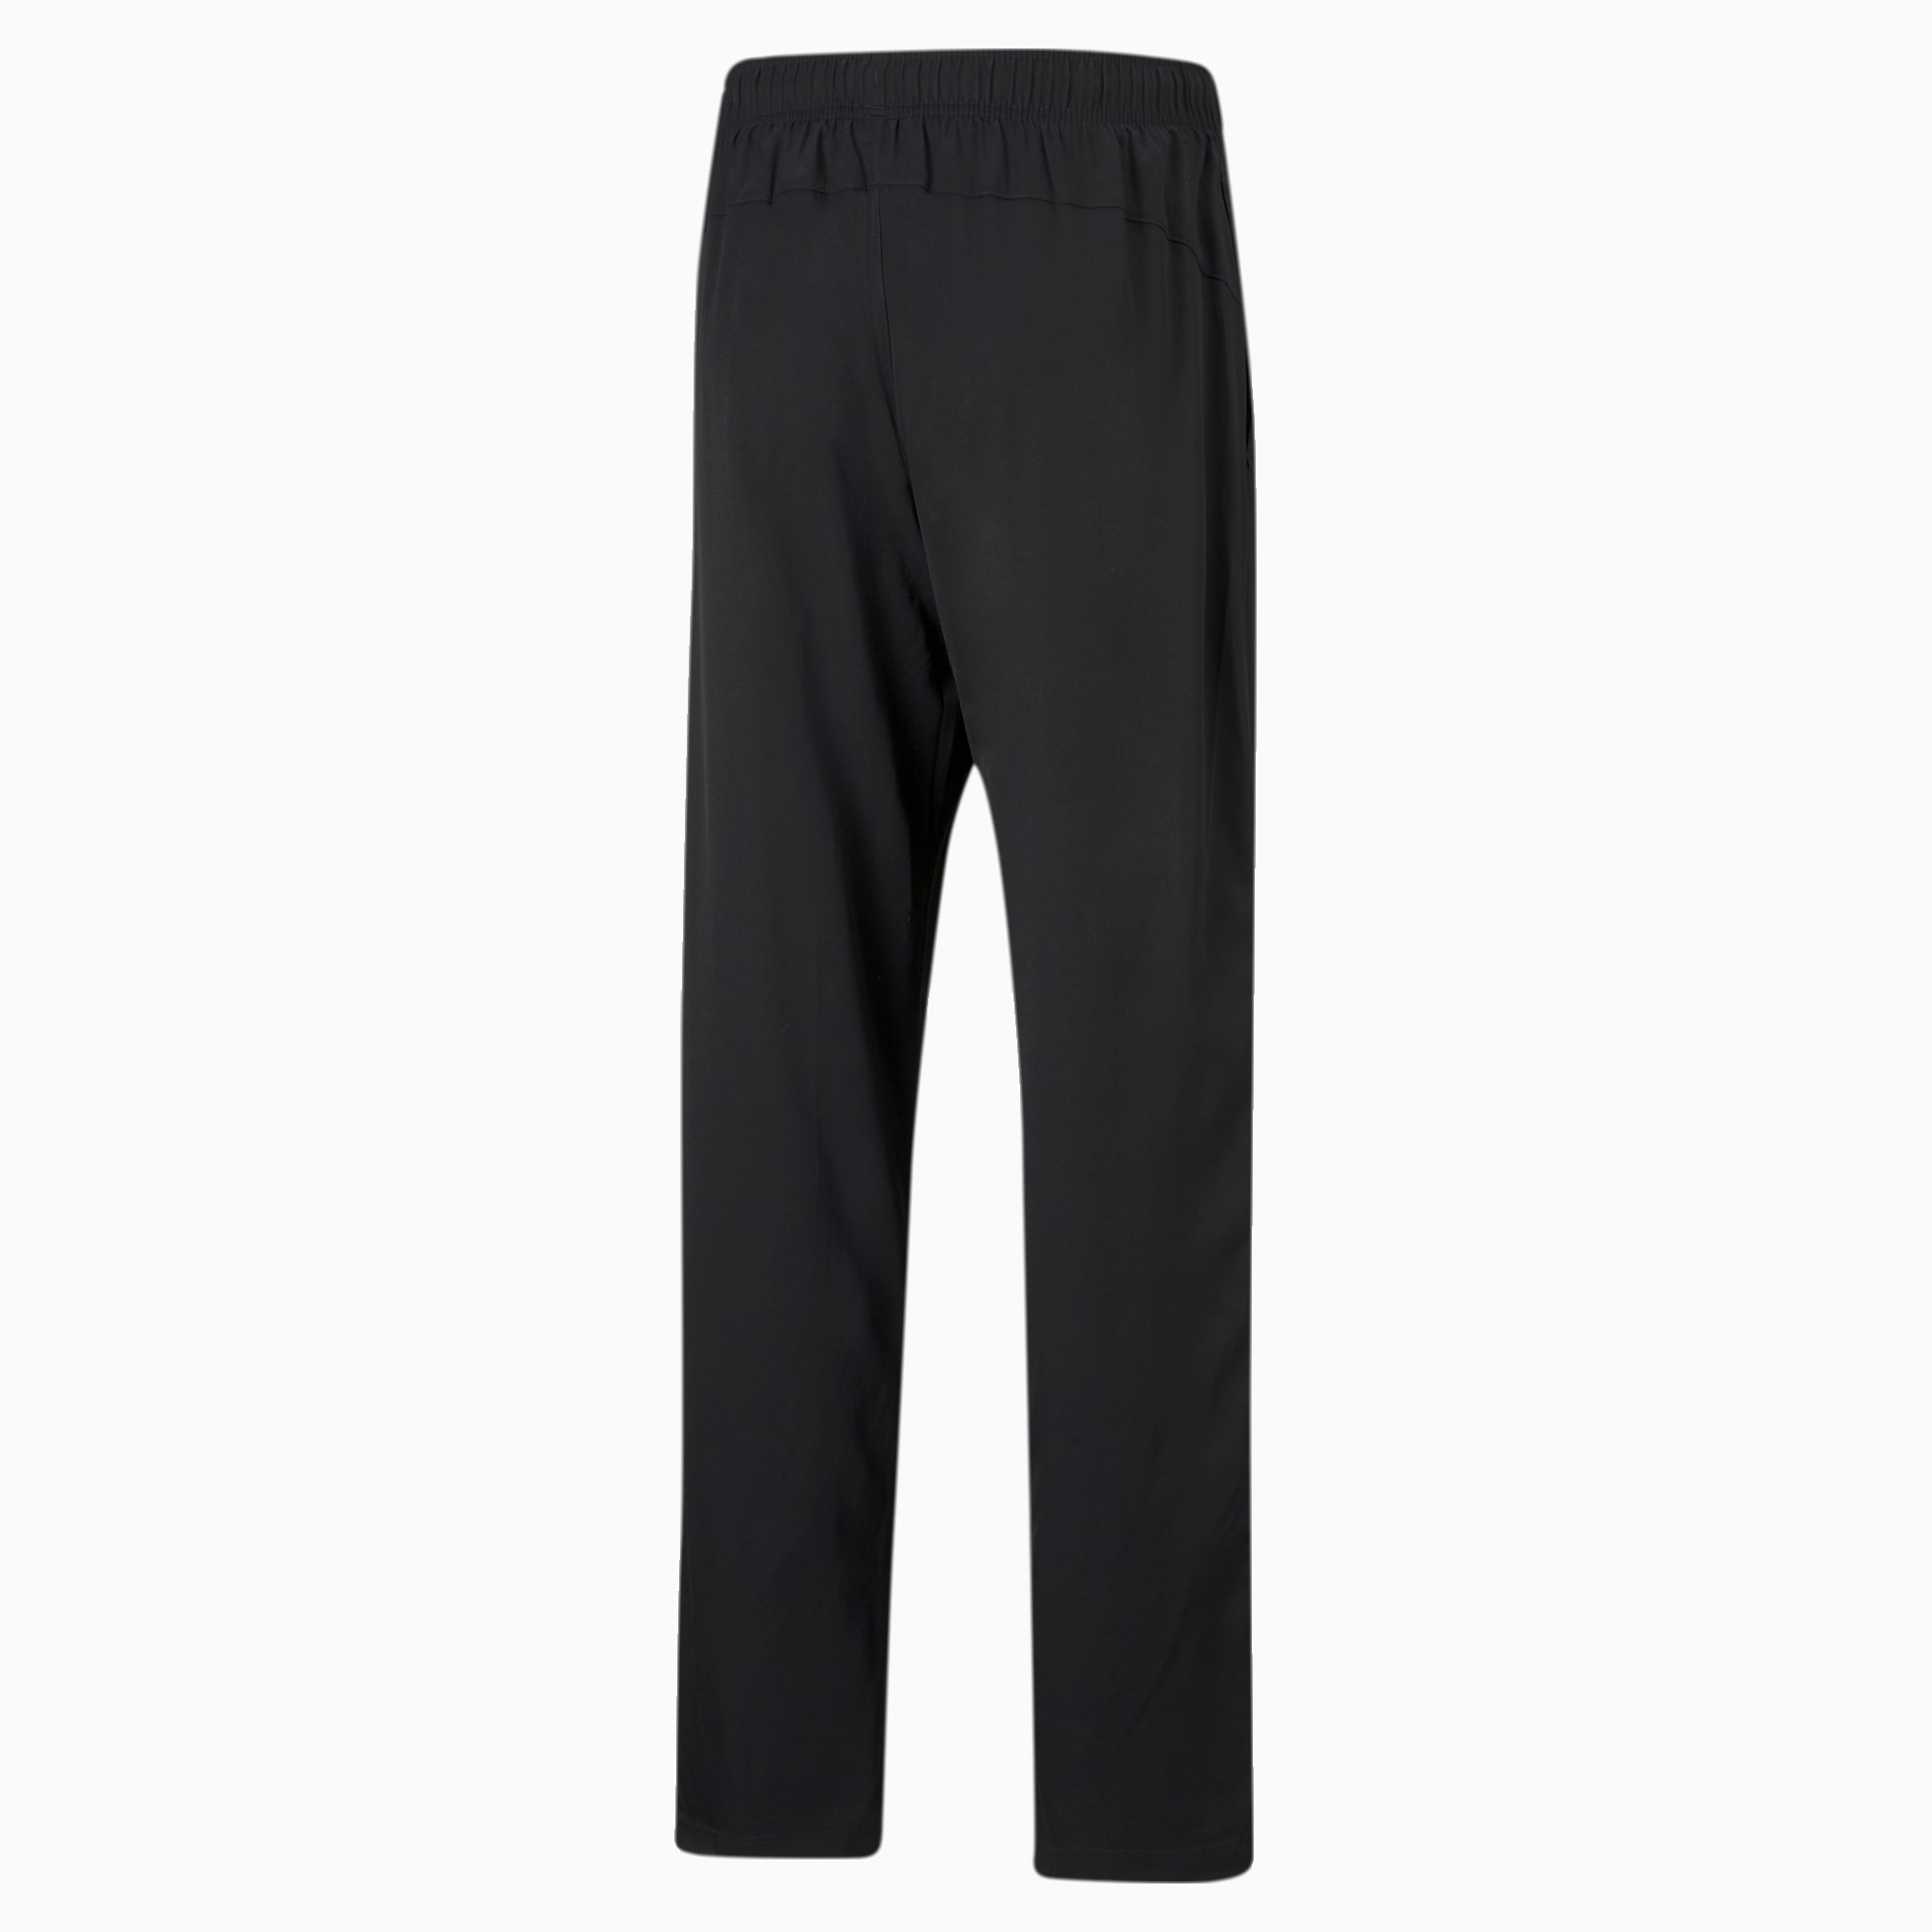 PUMA Active Woven Men's Sweatpants, Black, Size M, Clothing